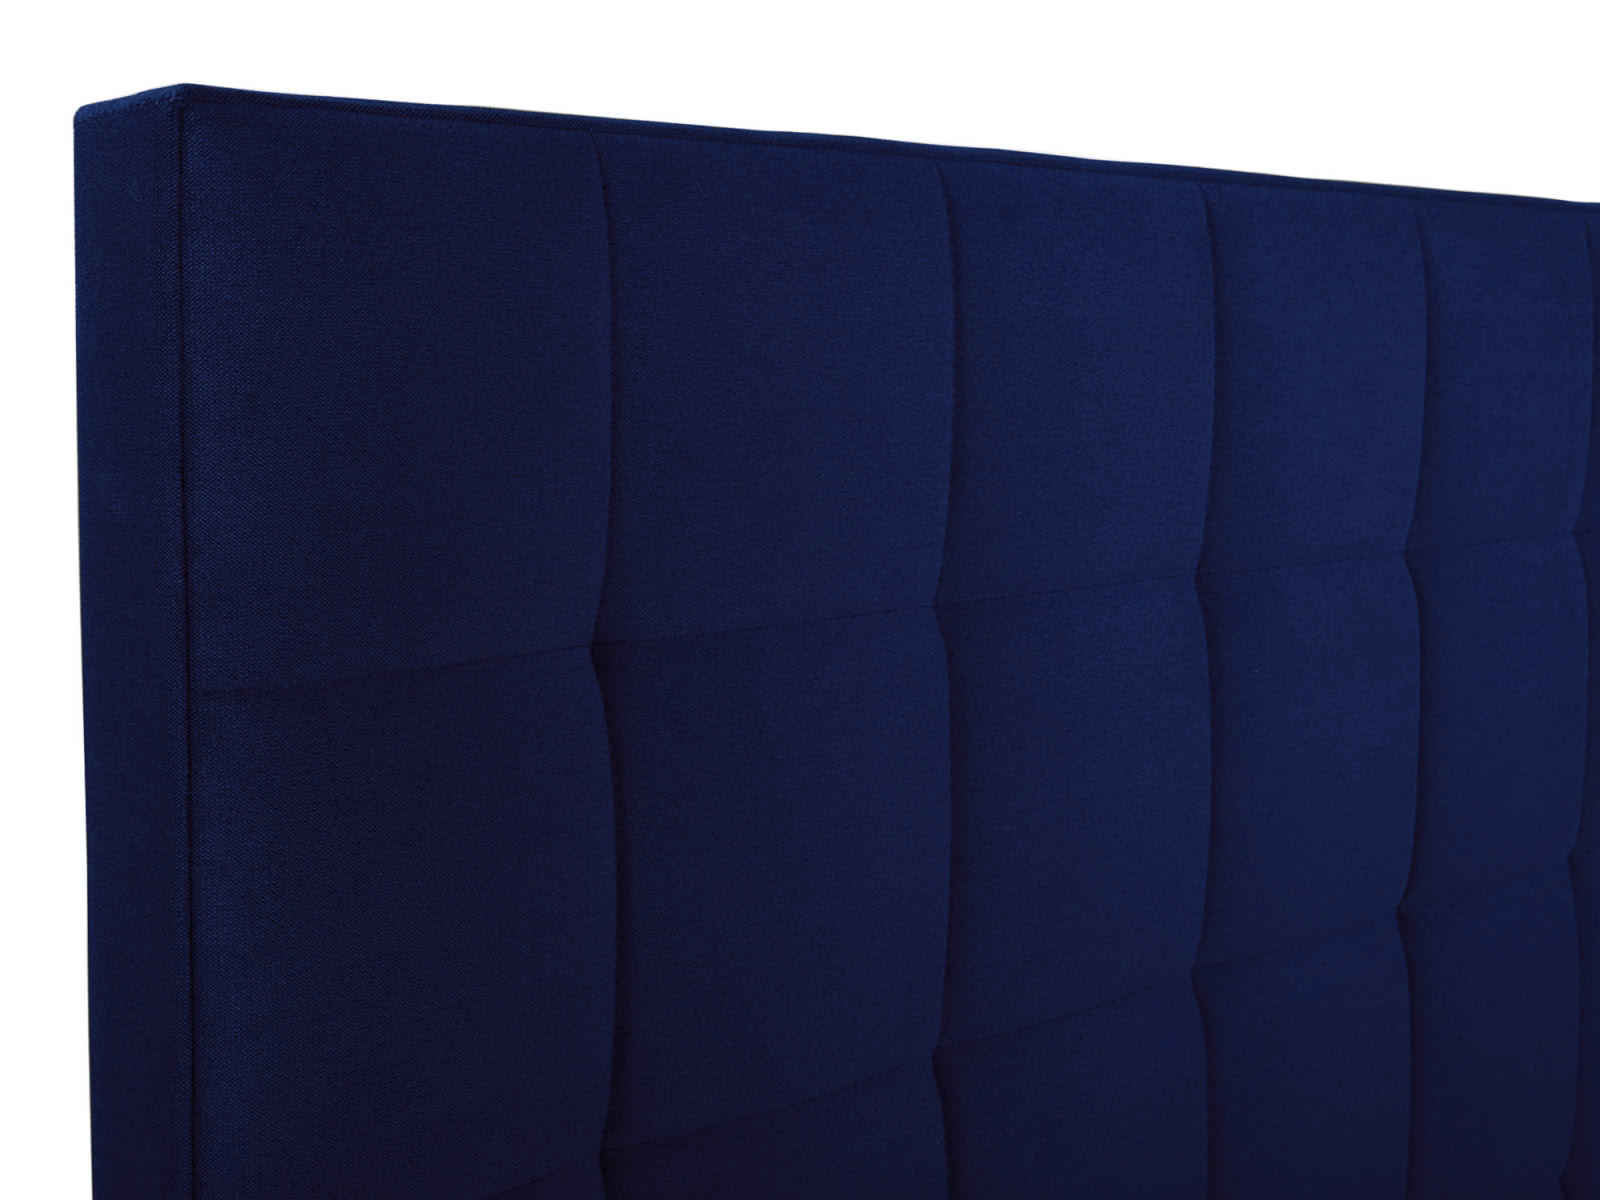 Купить кровать СтолЛайн Кровать СтолЛайн Пассаж 2 160х200 с подъемным механизмом дешево на официальном сайте